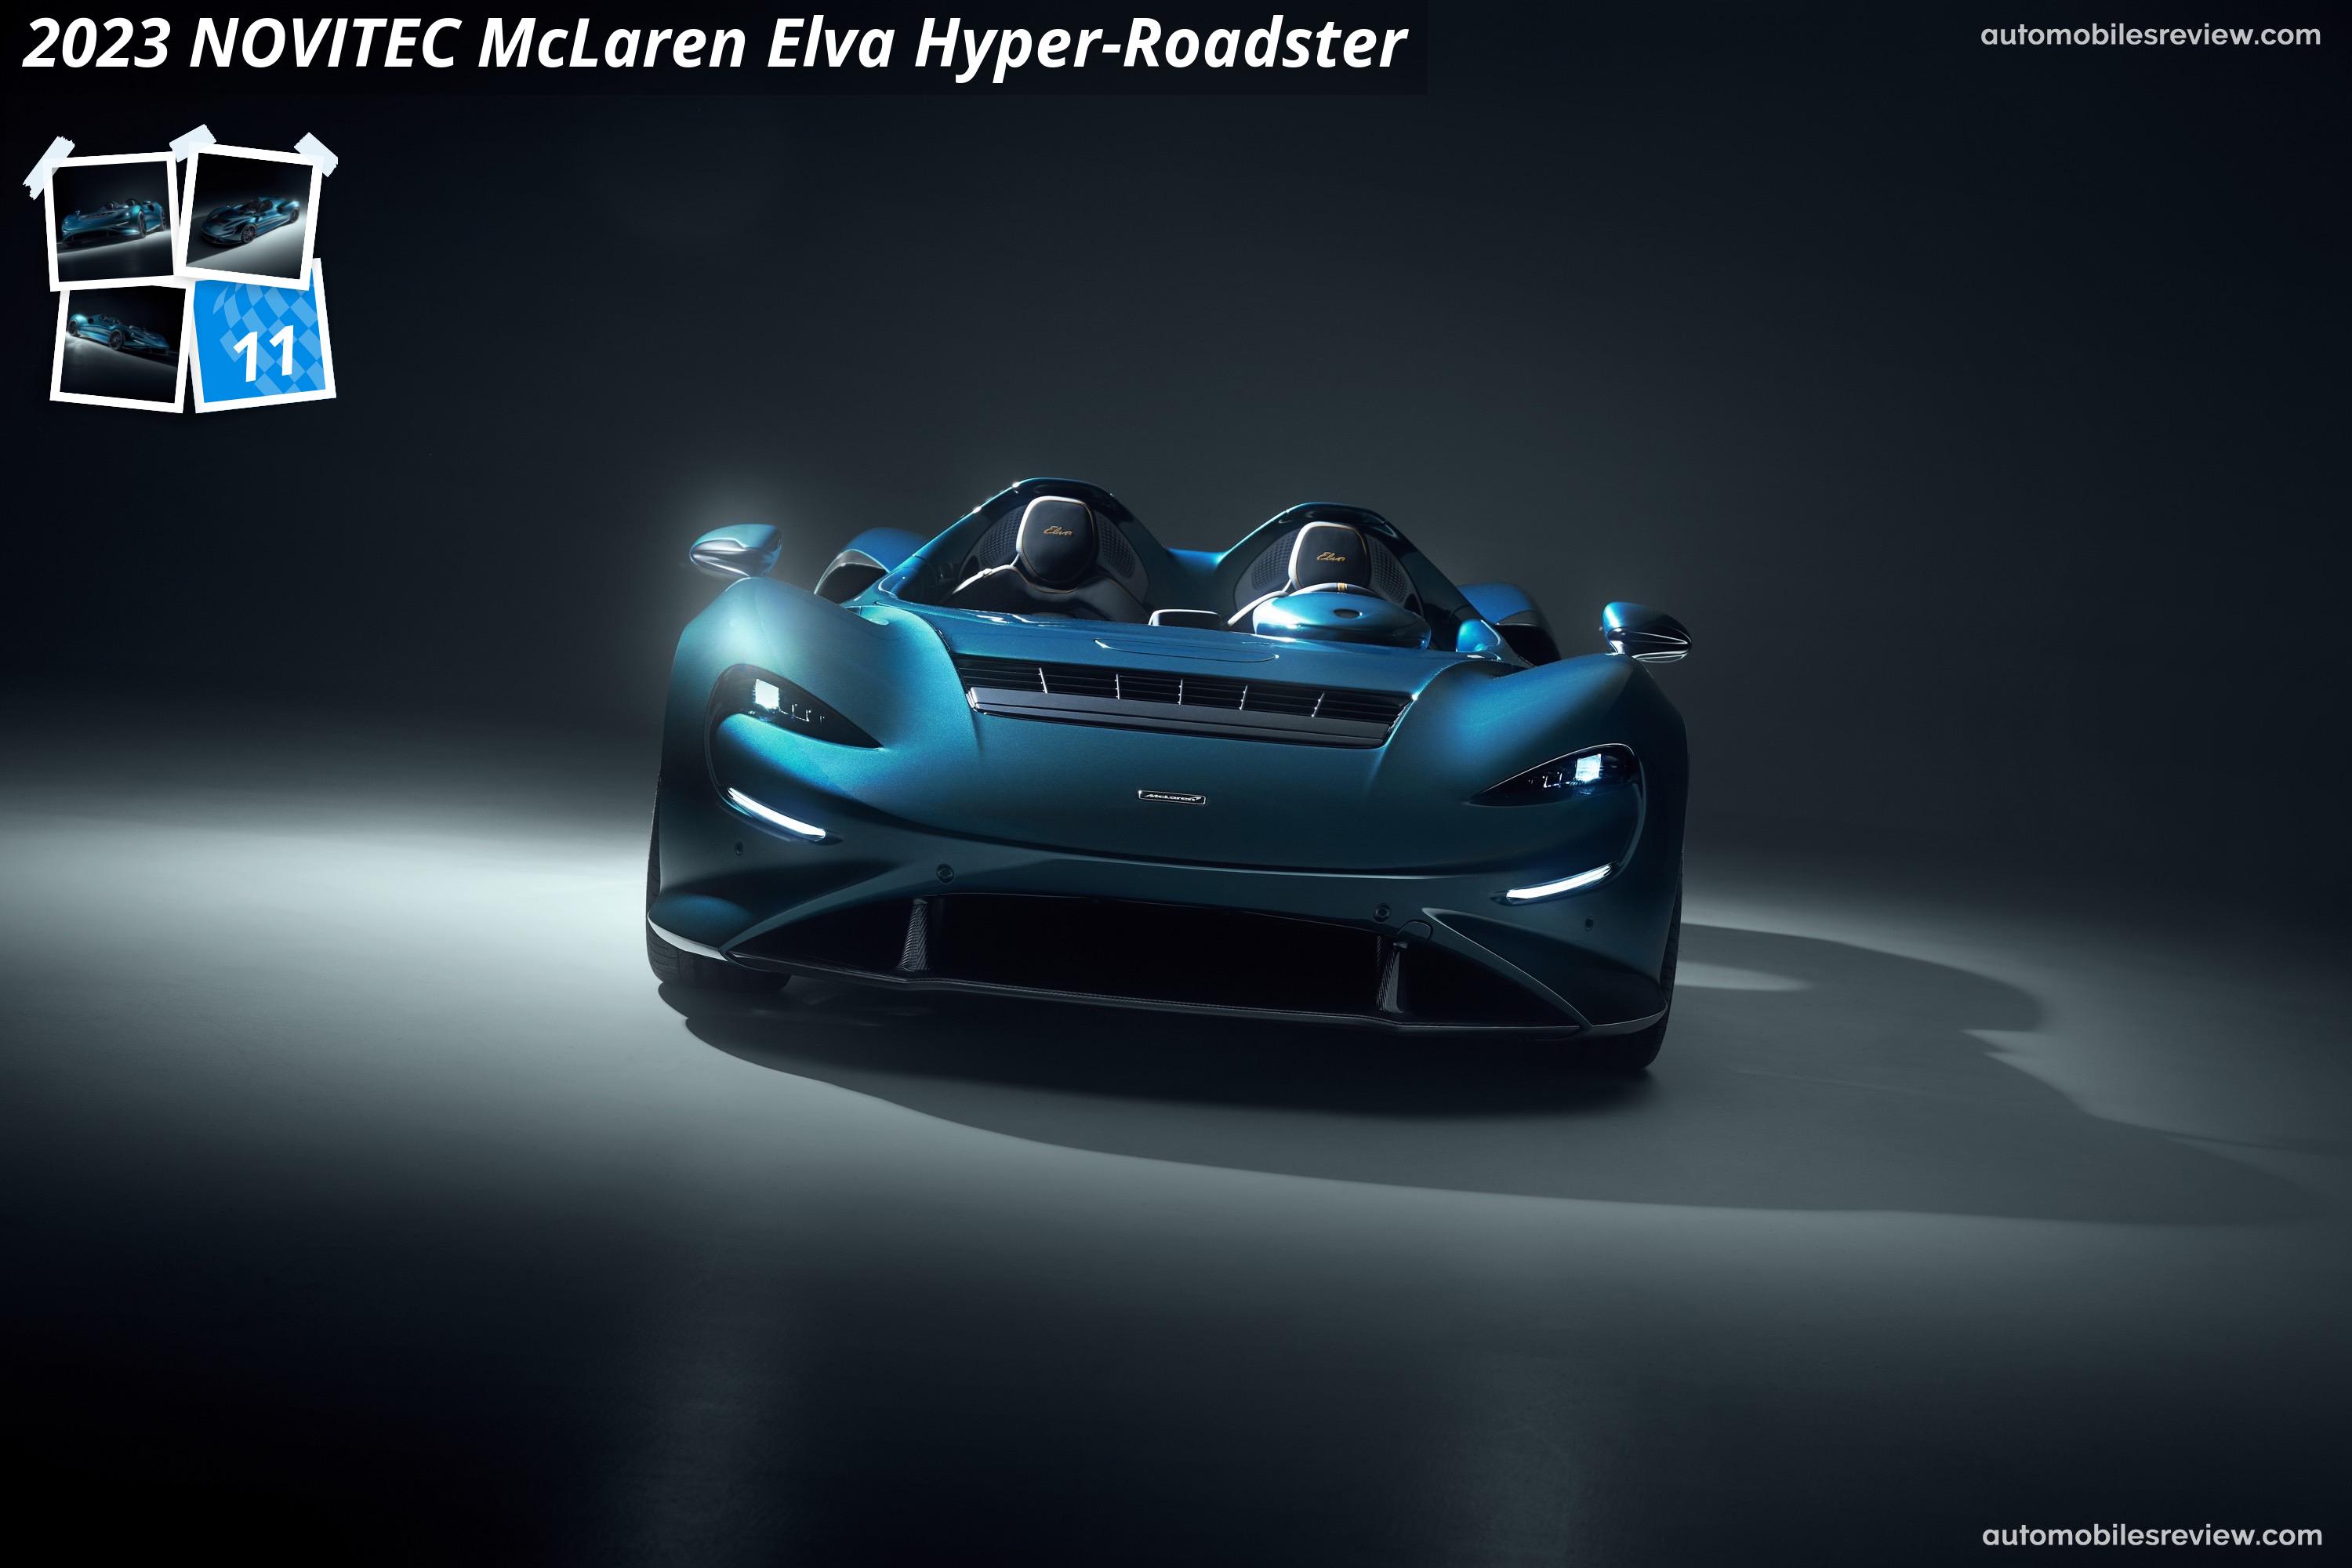 NOVITEC McLaren Elva Hyper-Roadster (2023)